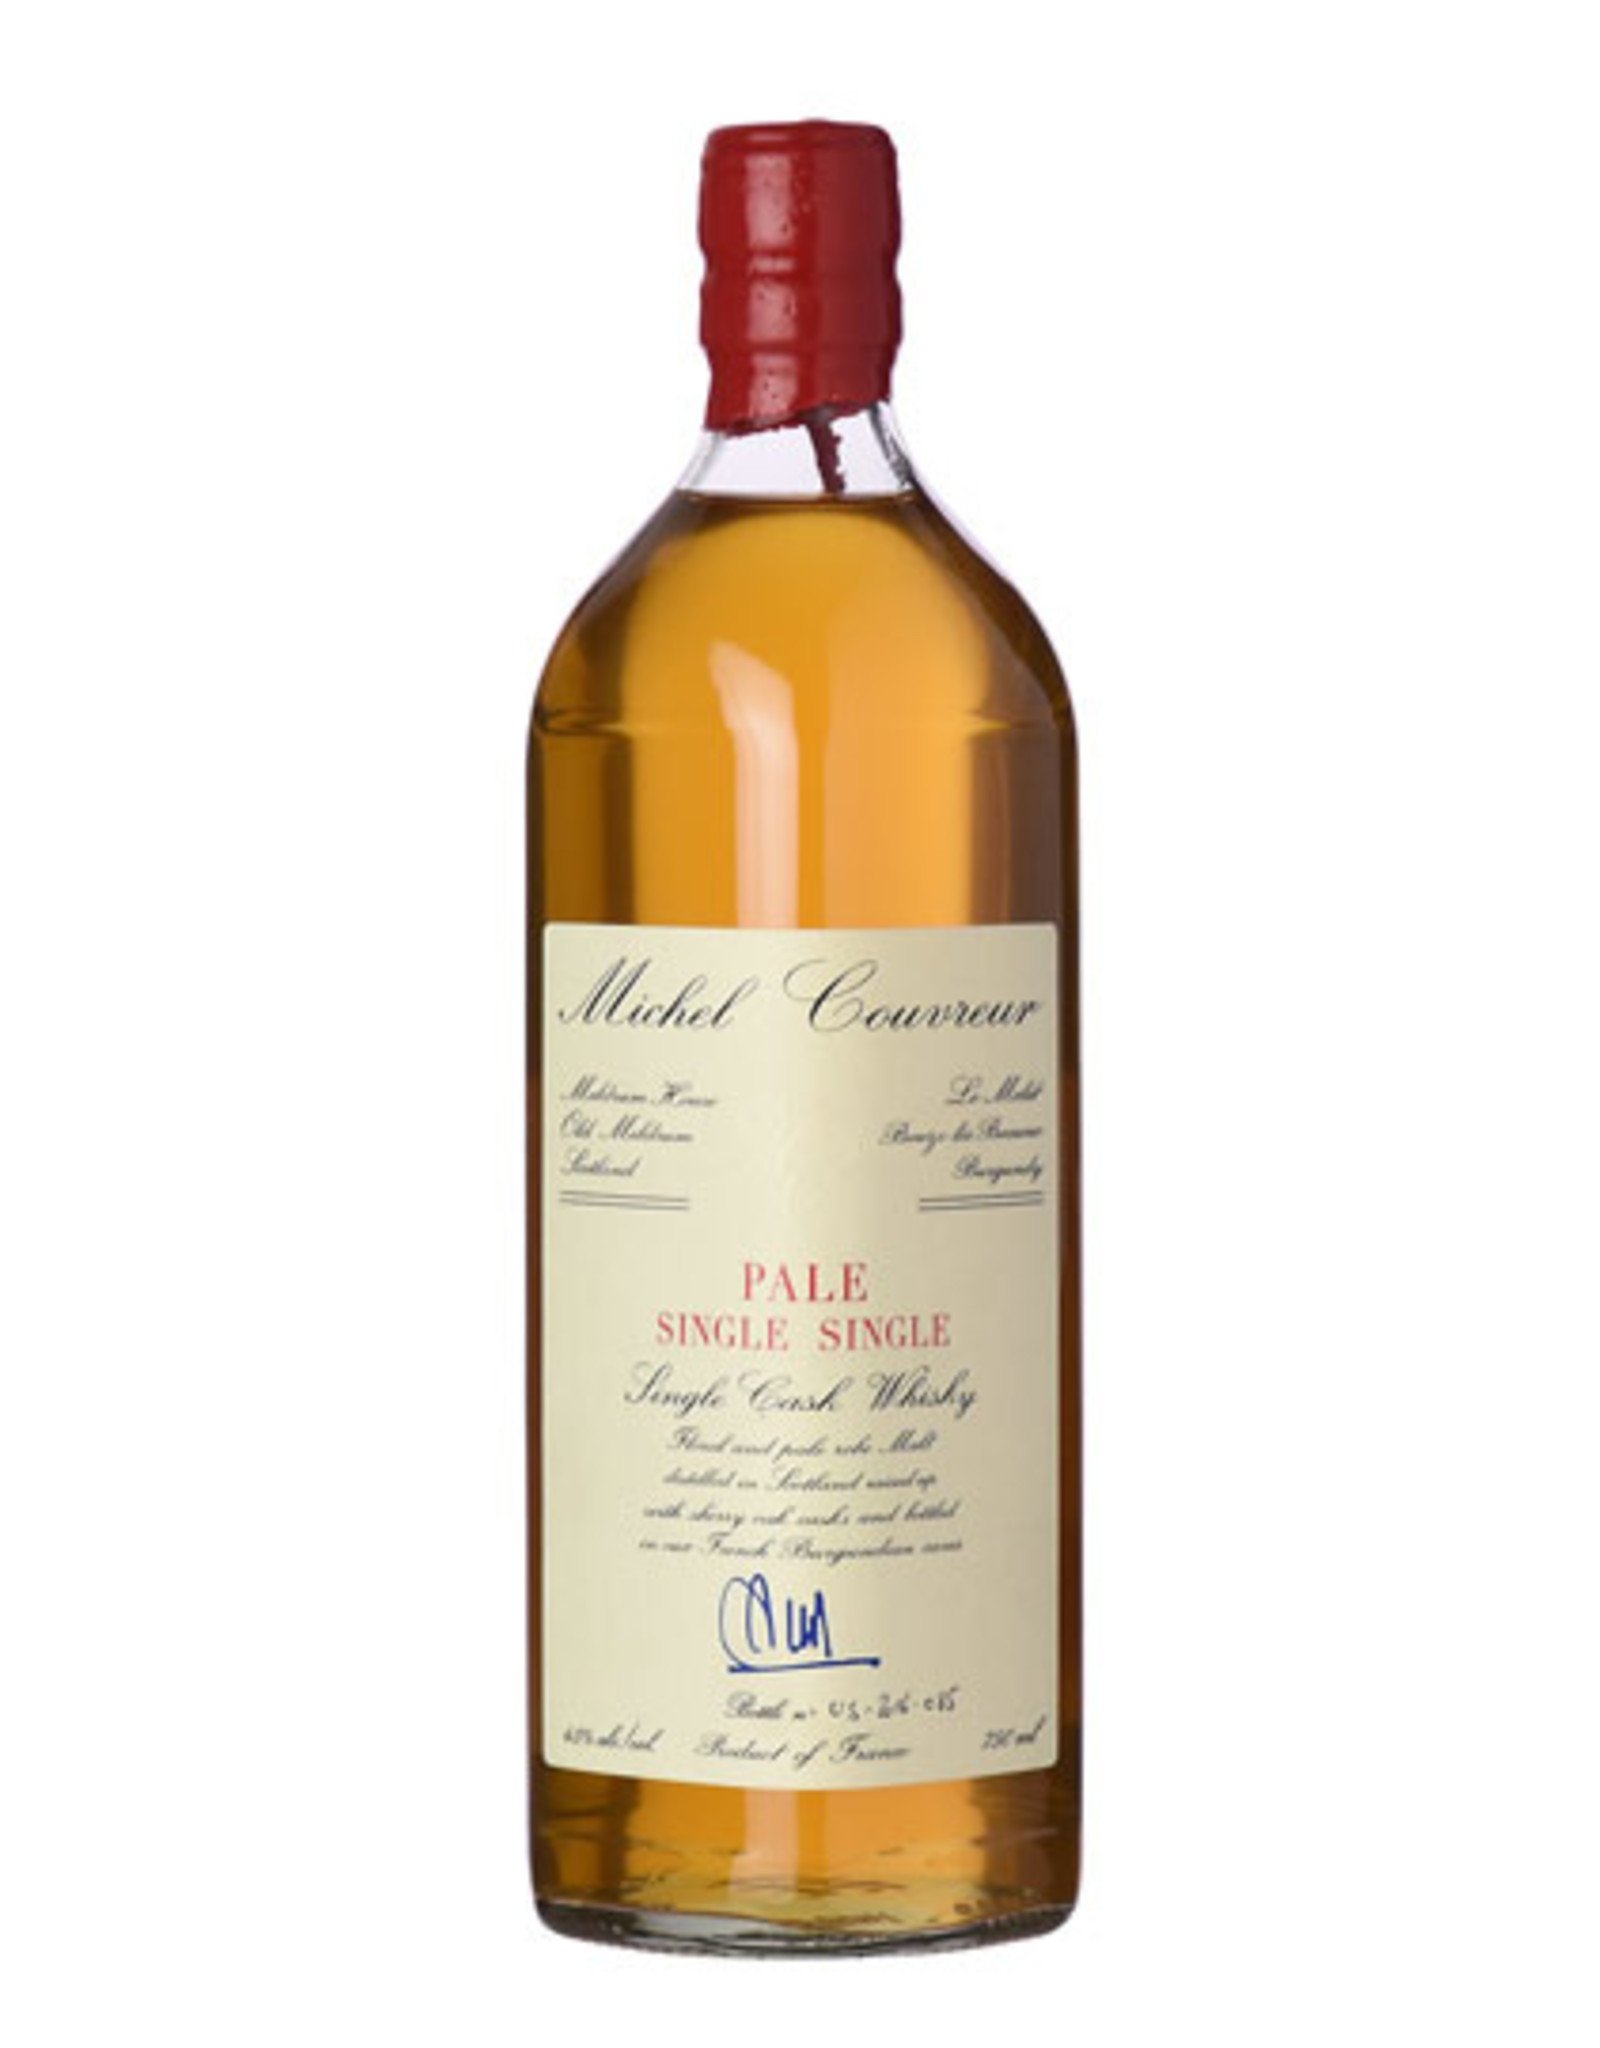 Michel Couvreur Pale Single-Single Malt Whisky